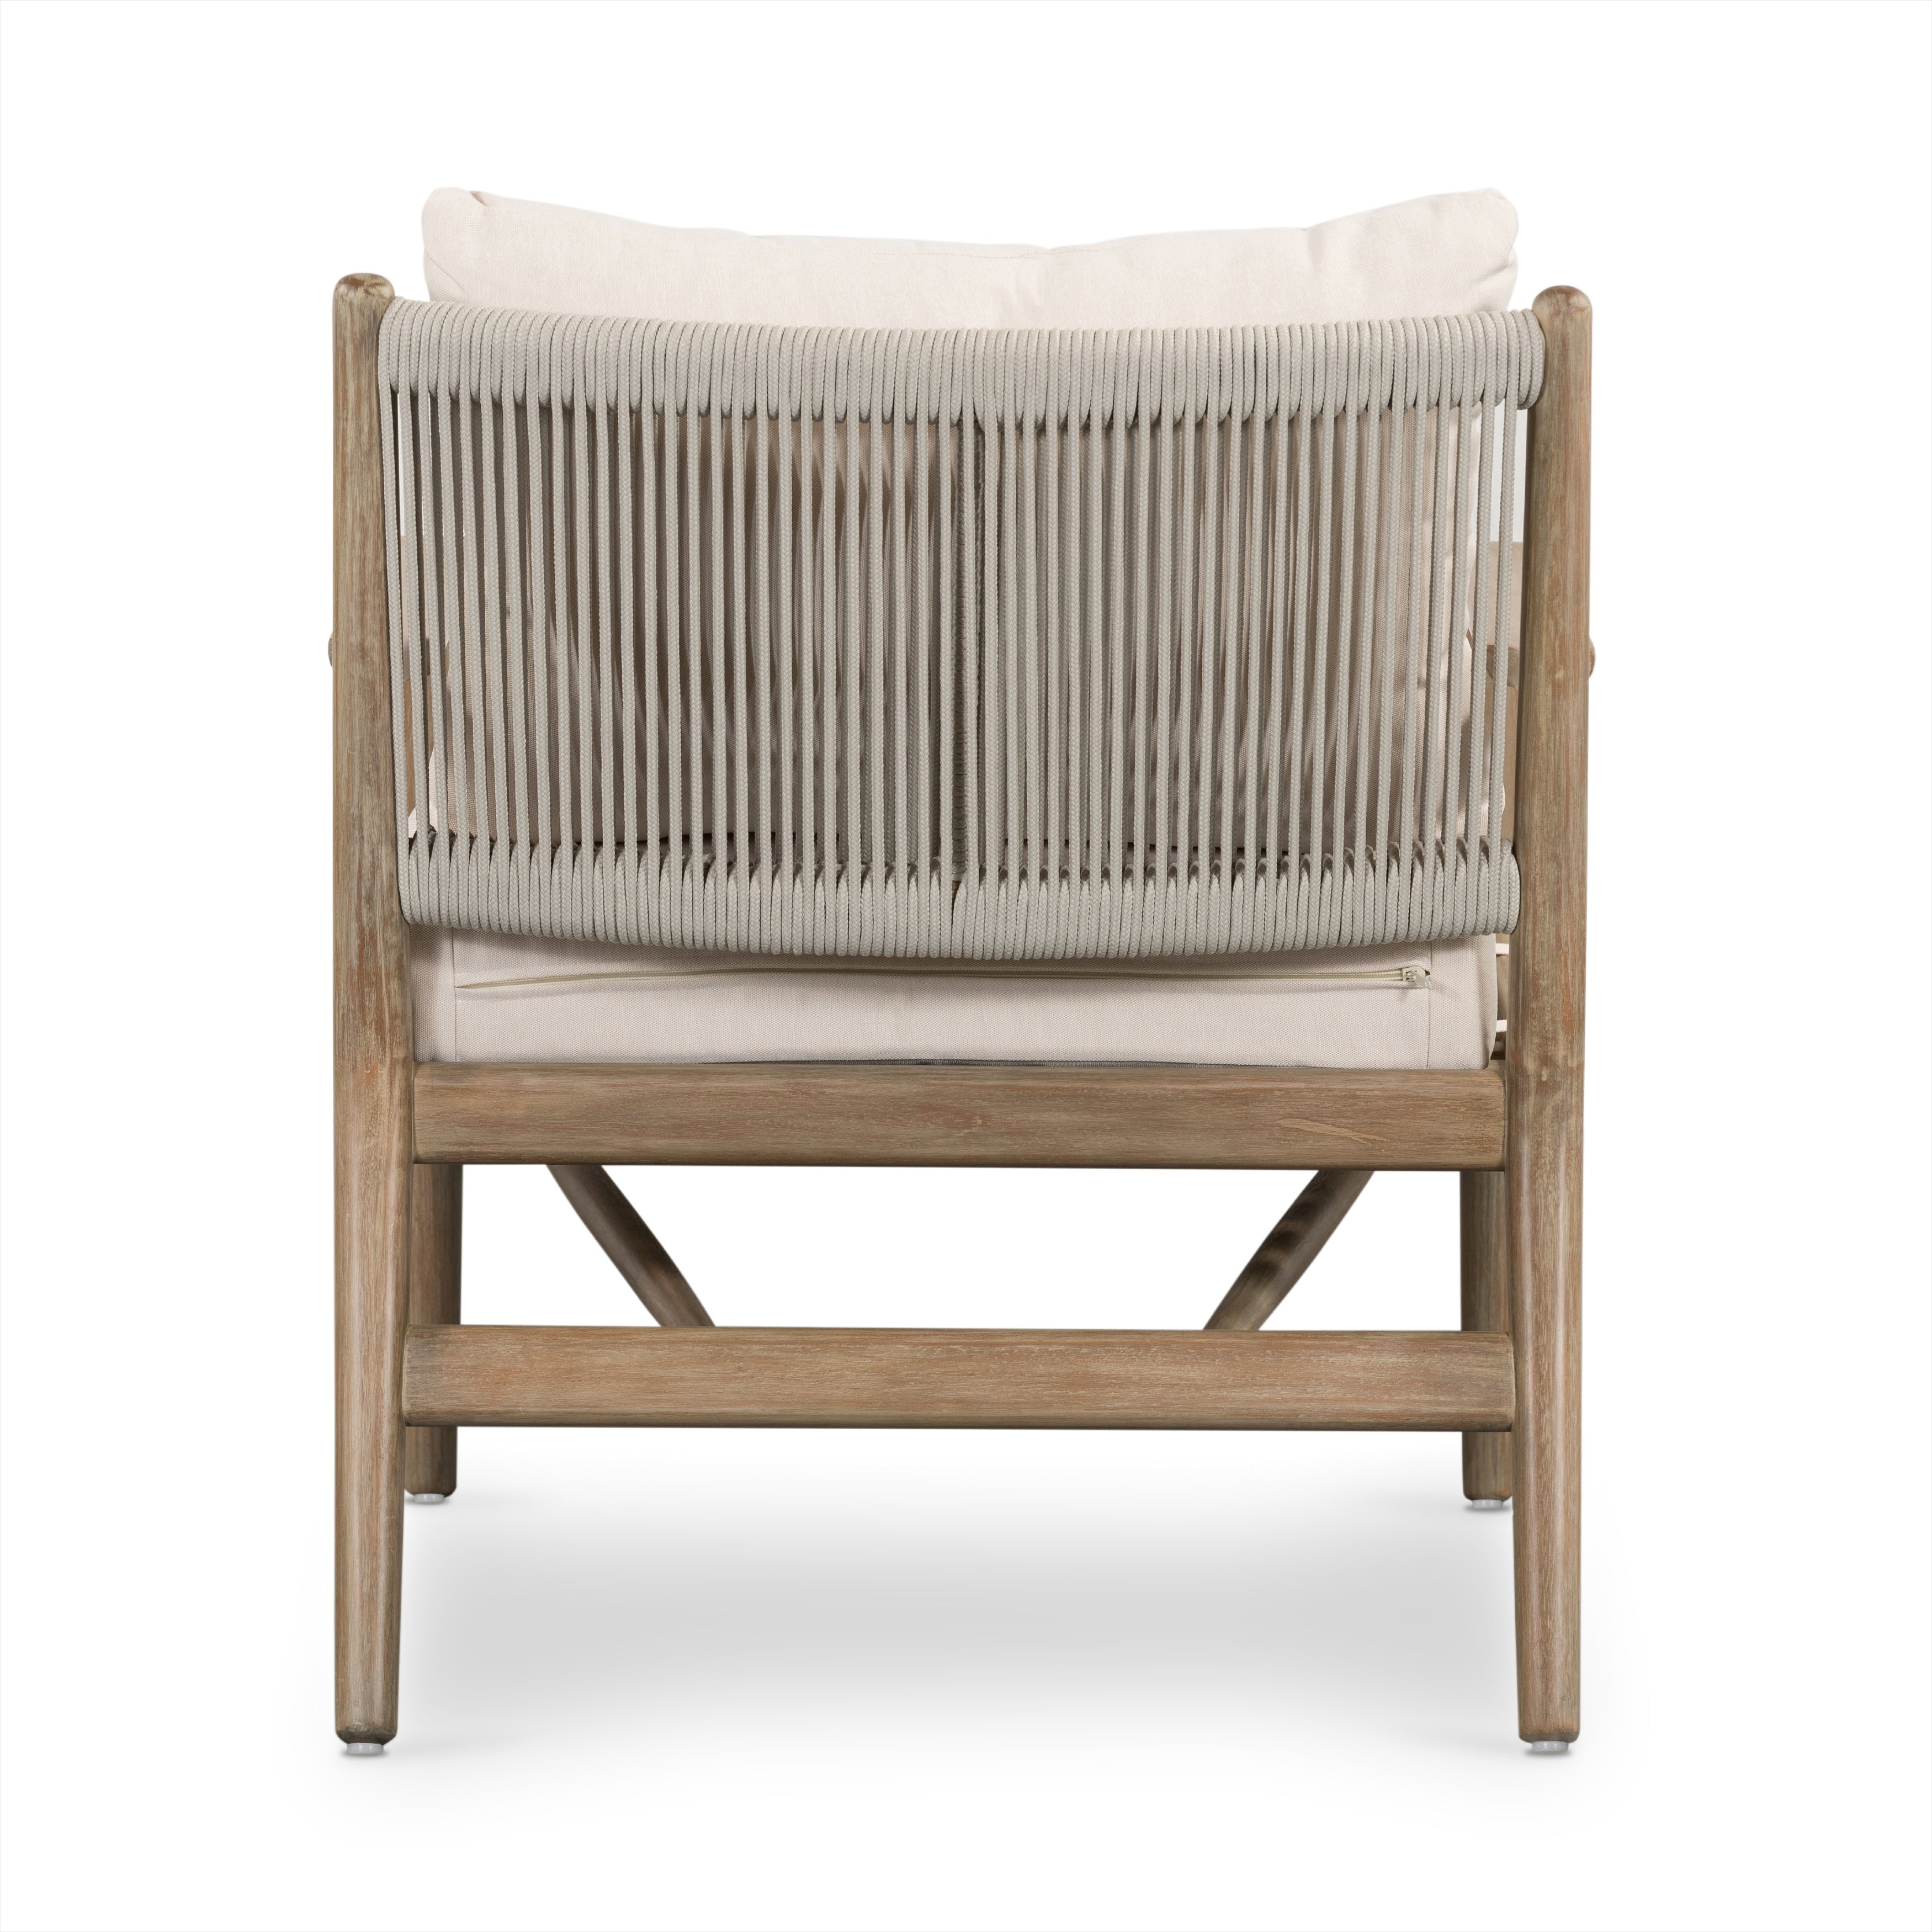 Rosen Outdoor Chair - Natural Eucalyptus